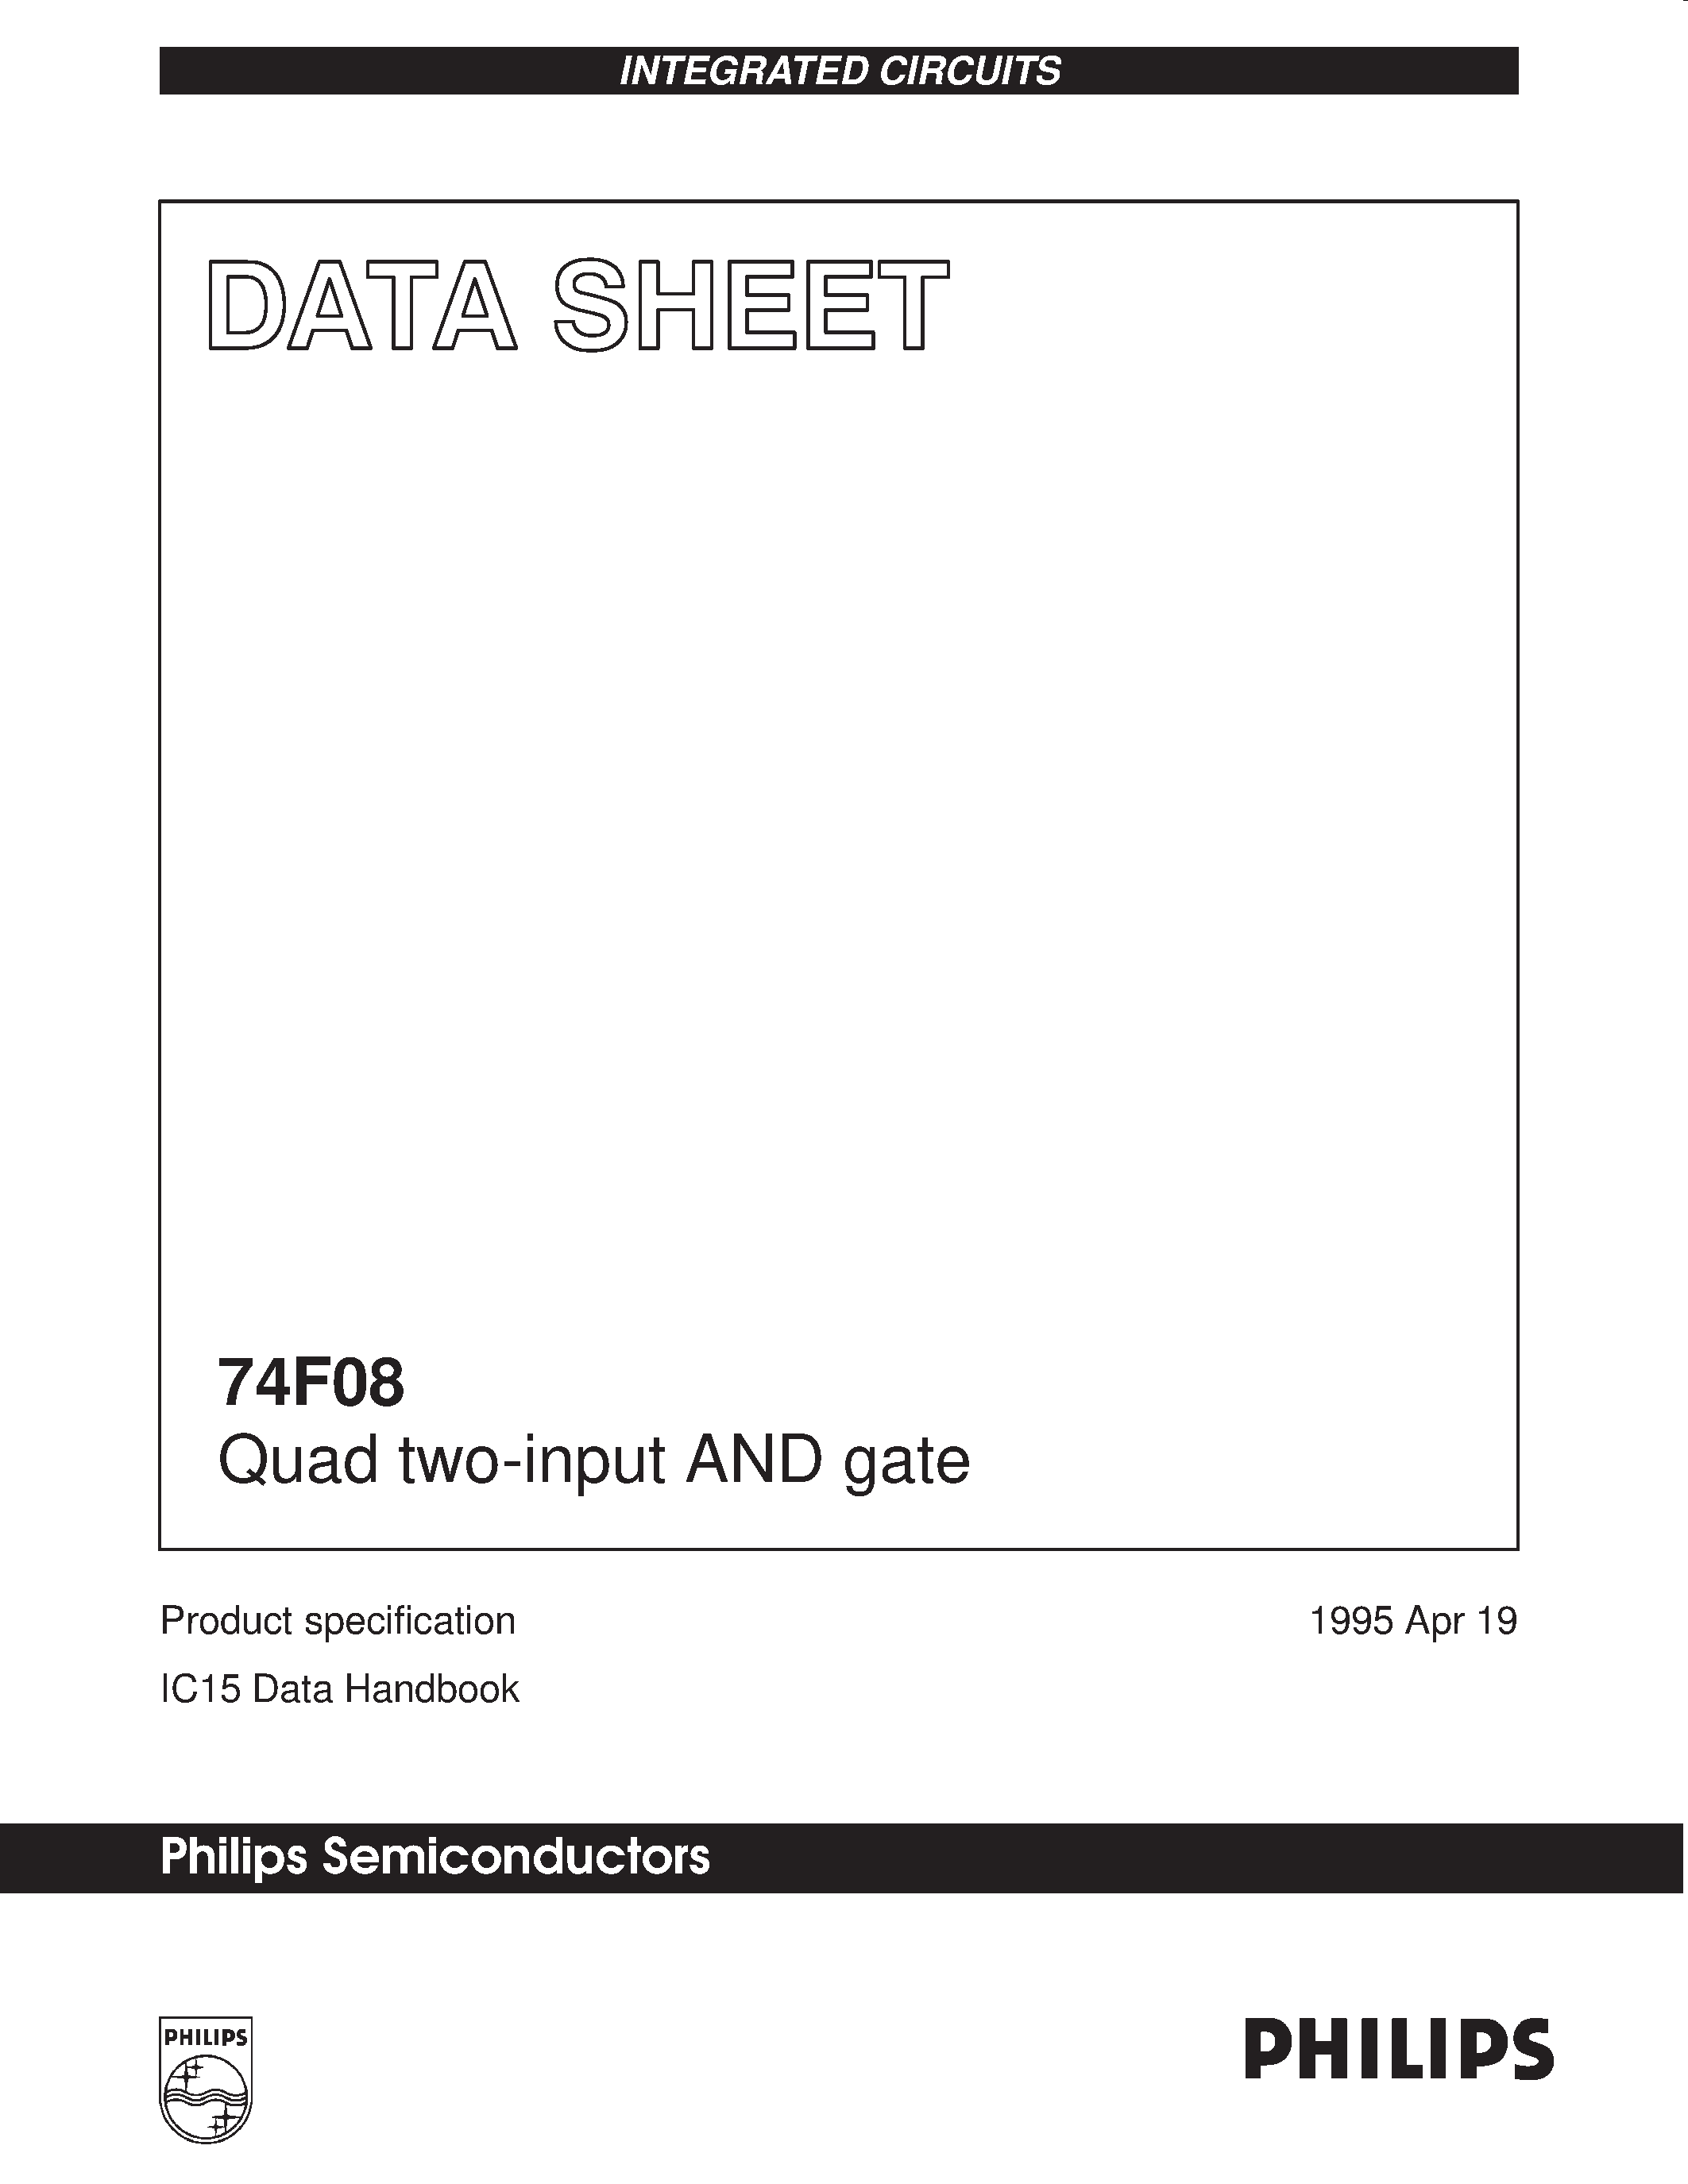 Даташит 74F08 - Quad two-input AND gate страница 1